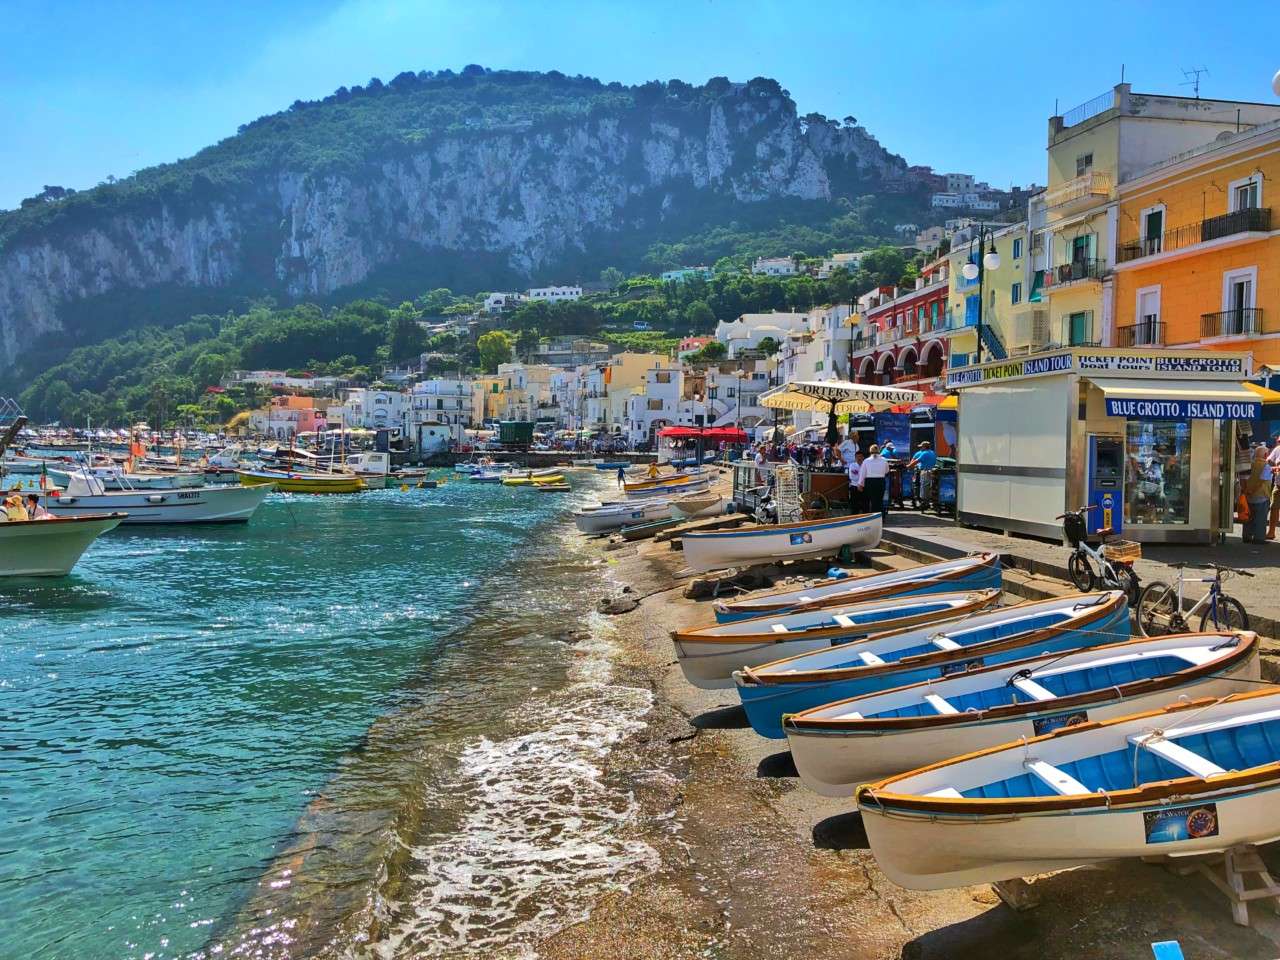 Barche a Capri in Costiera Amalfitana puzzle online